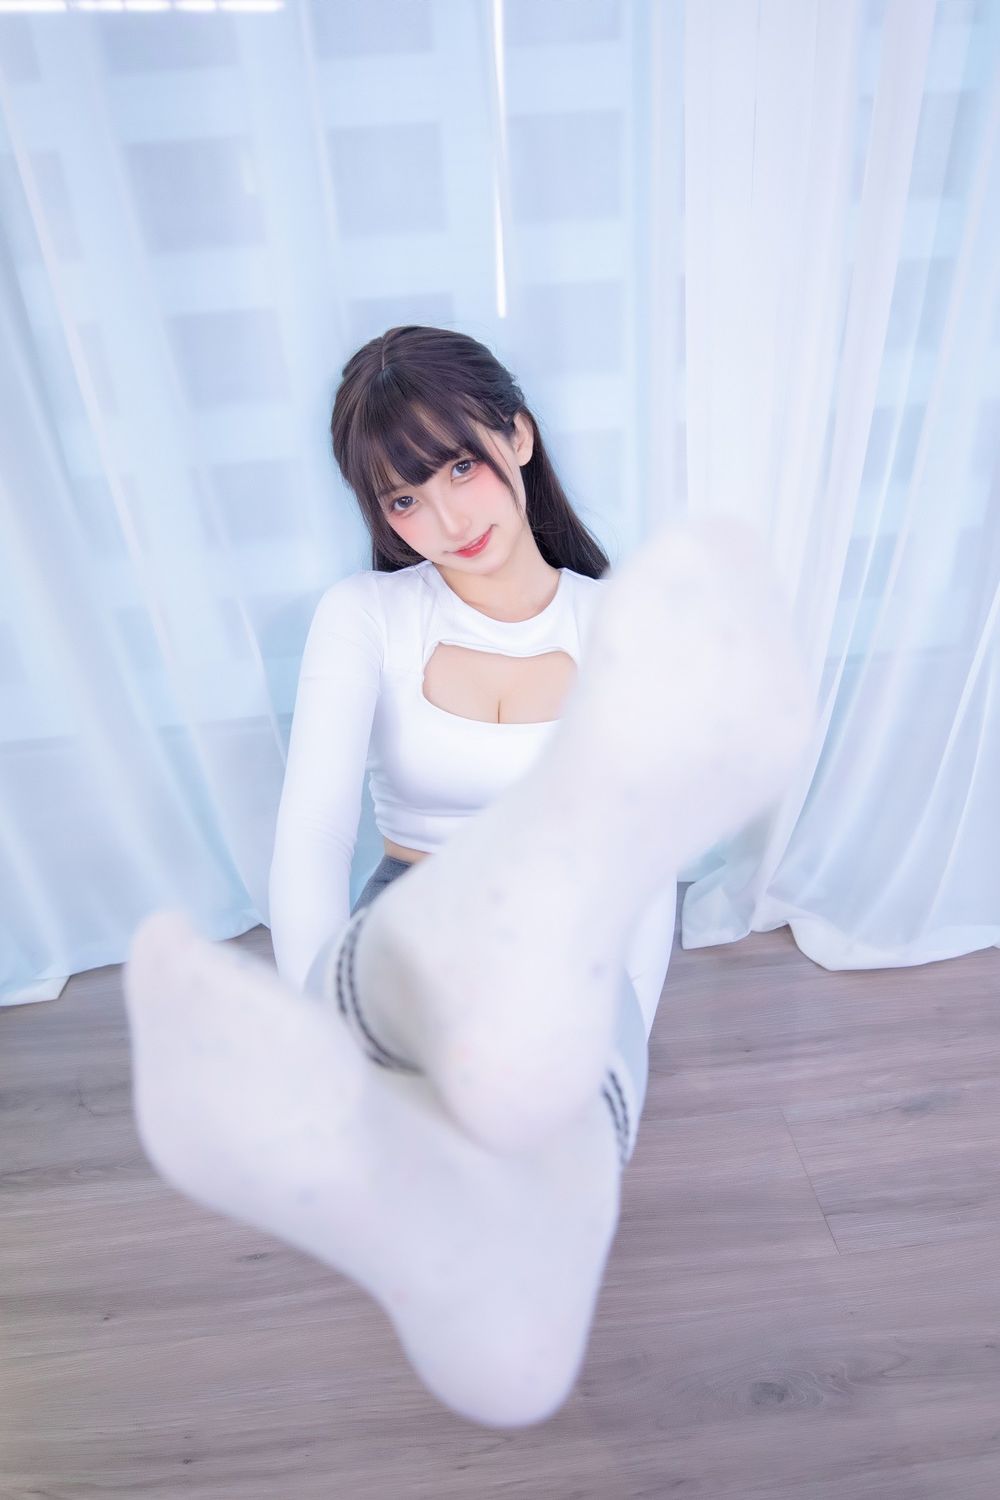 萌系妹子神楽坂真冬性感紧身运动裤瑜伽少女主题写真